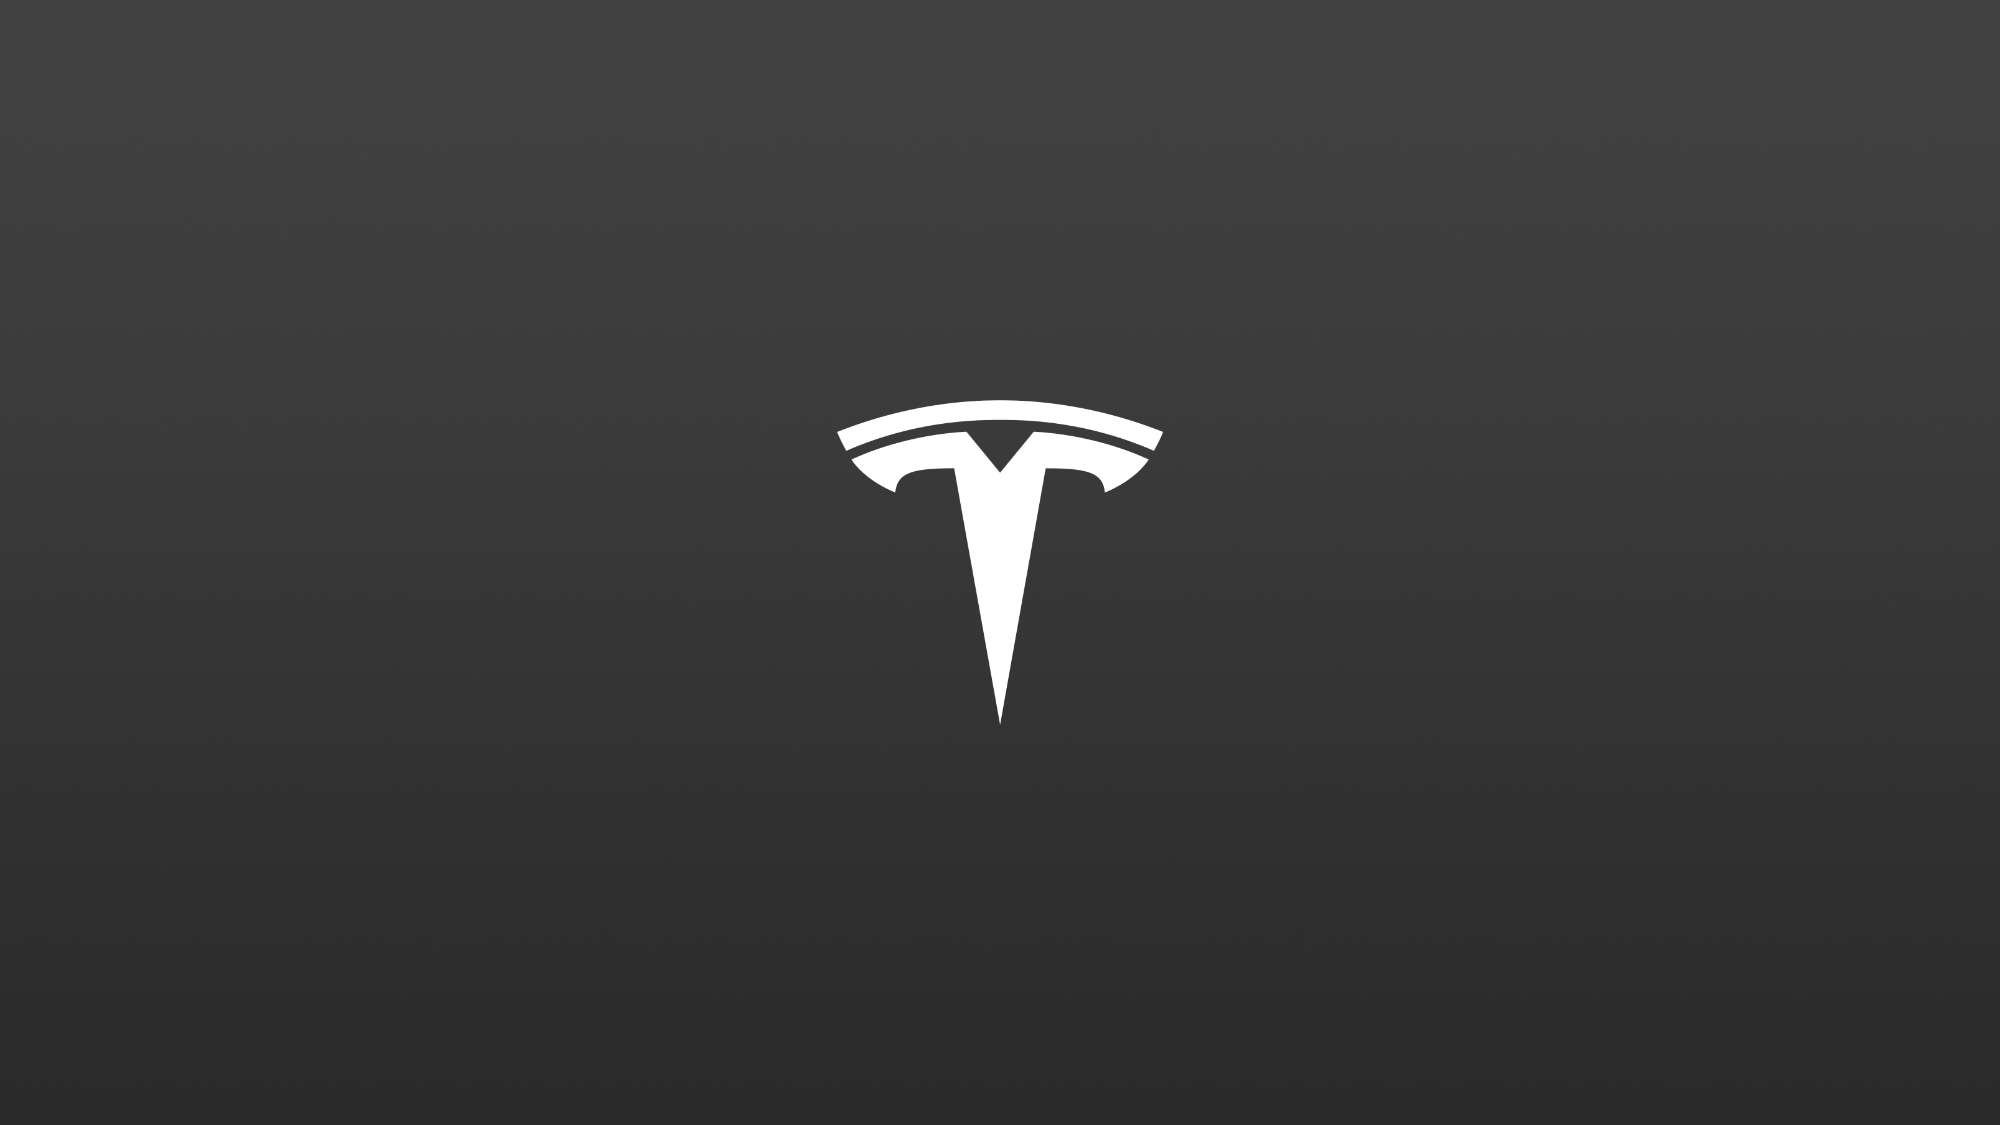 Tesla Powerwall feature in update 4.12